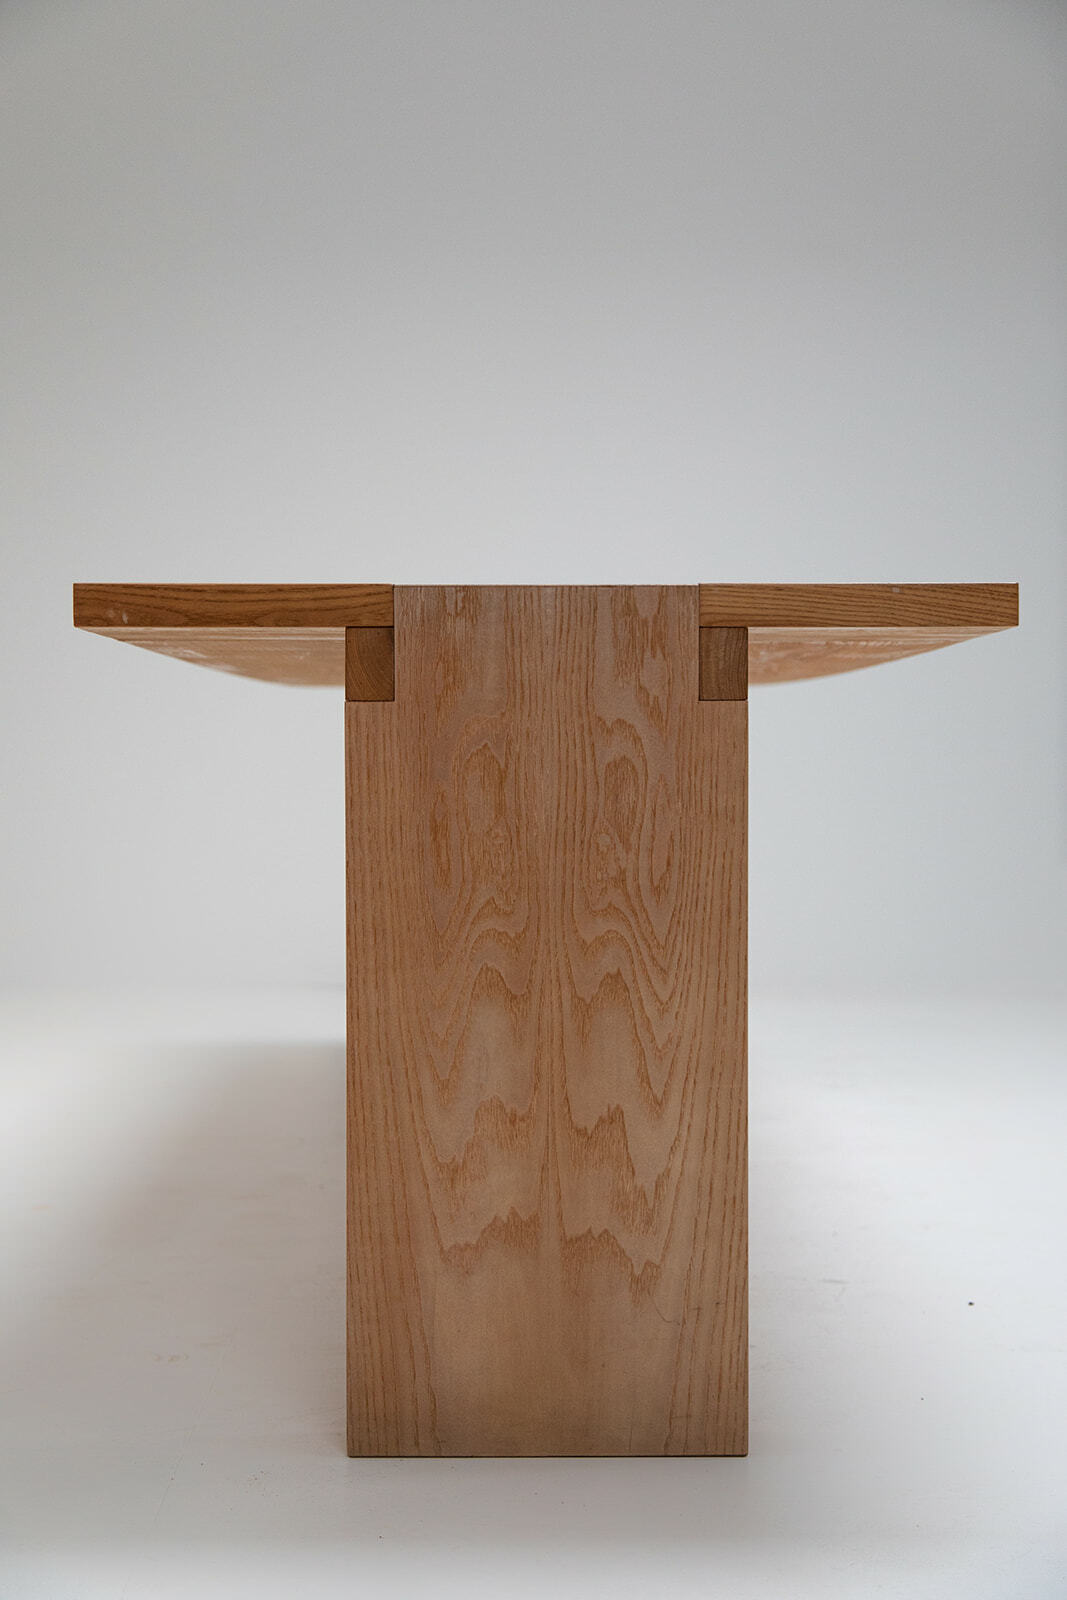 Valmarana table by Carlo Scarpa for Simon Gavina